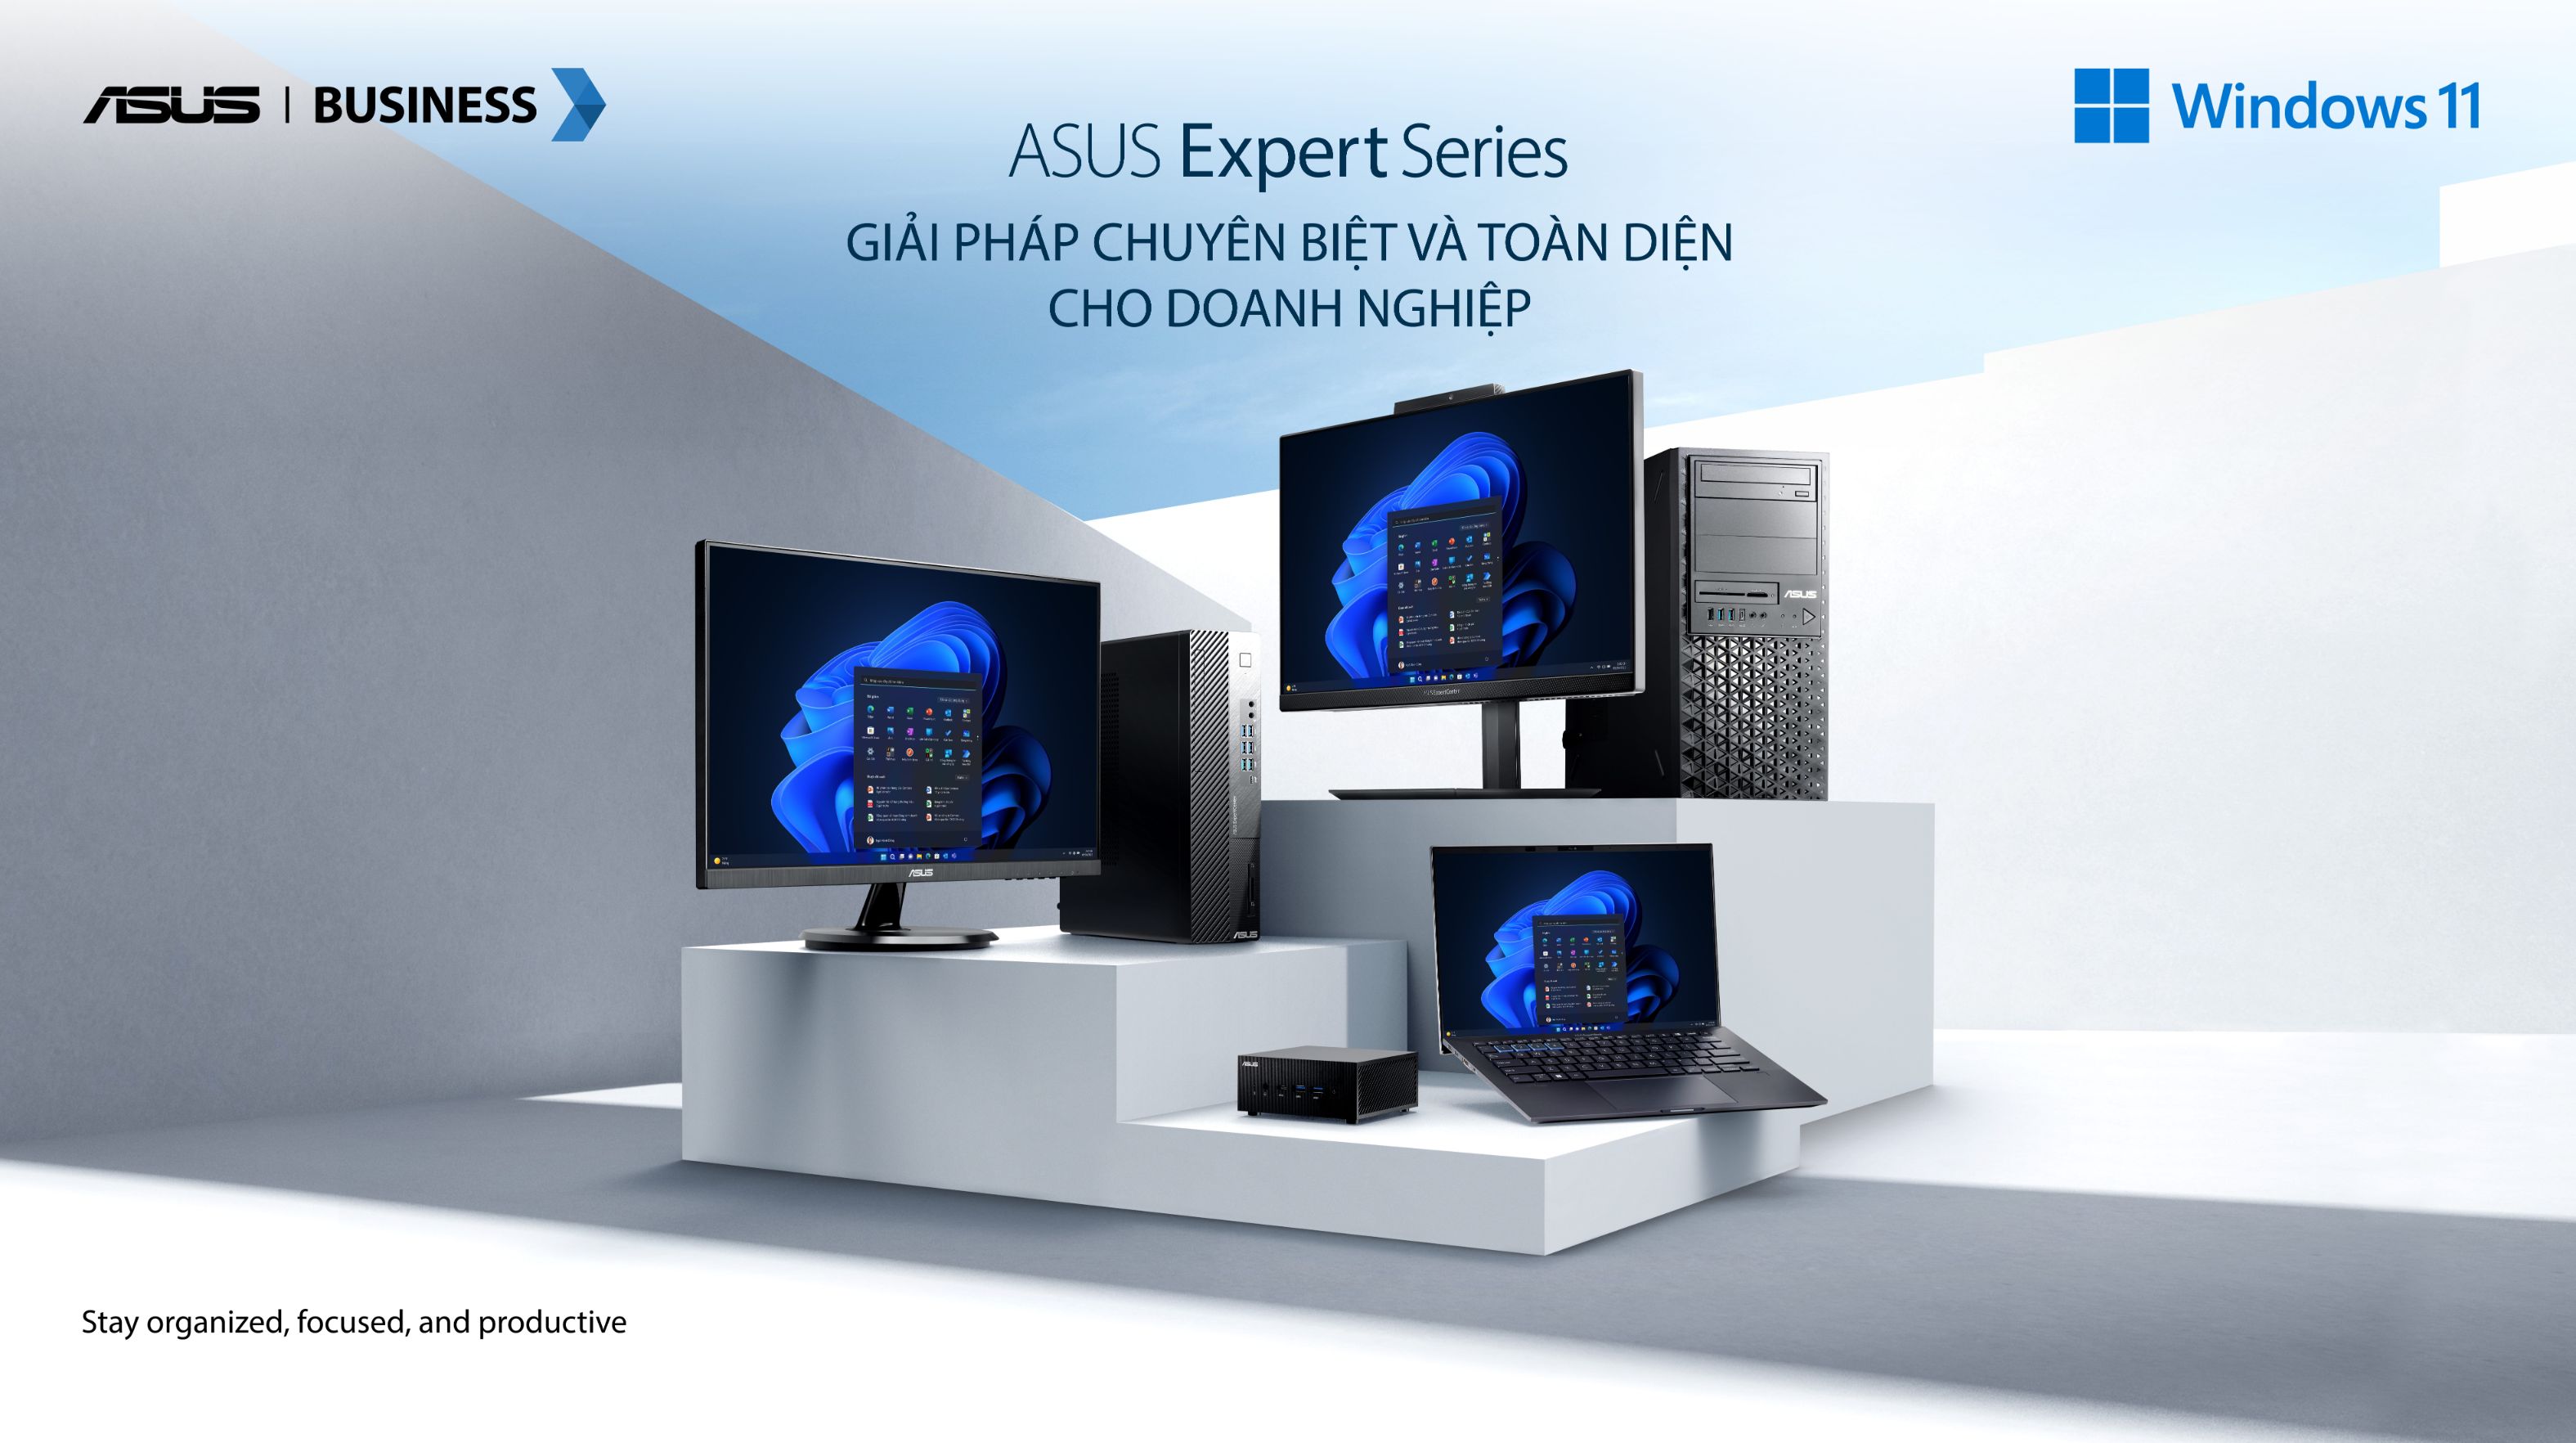 Expert Series “Công nghệ mở lối   Chuyển đổi tương lai” với ASUS Expert Series